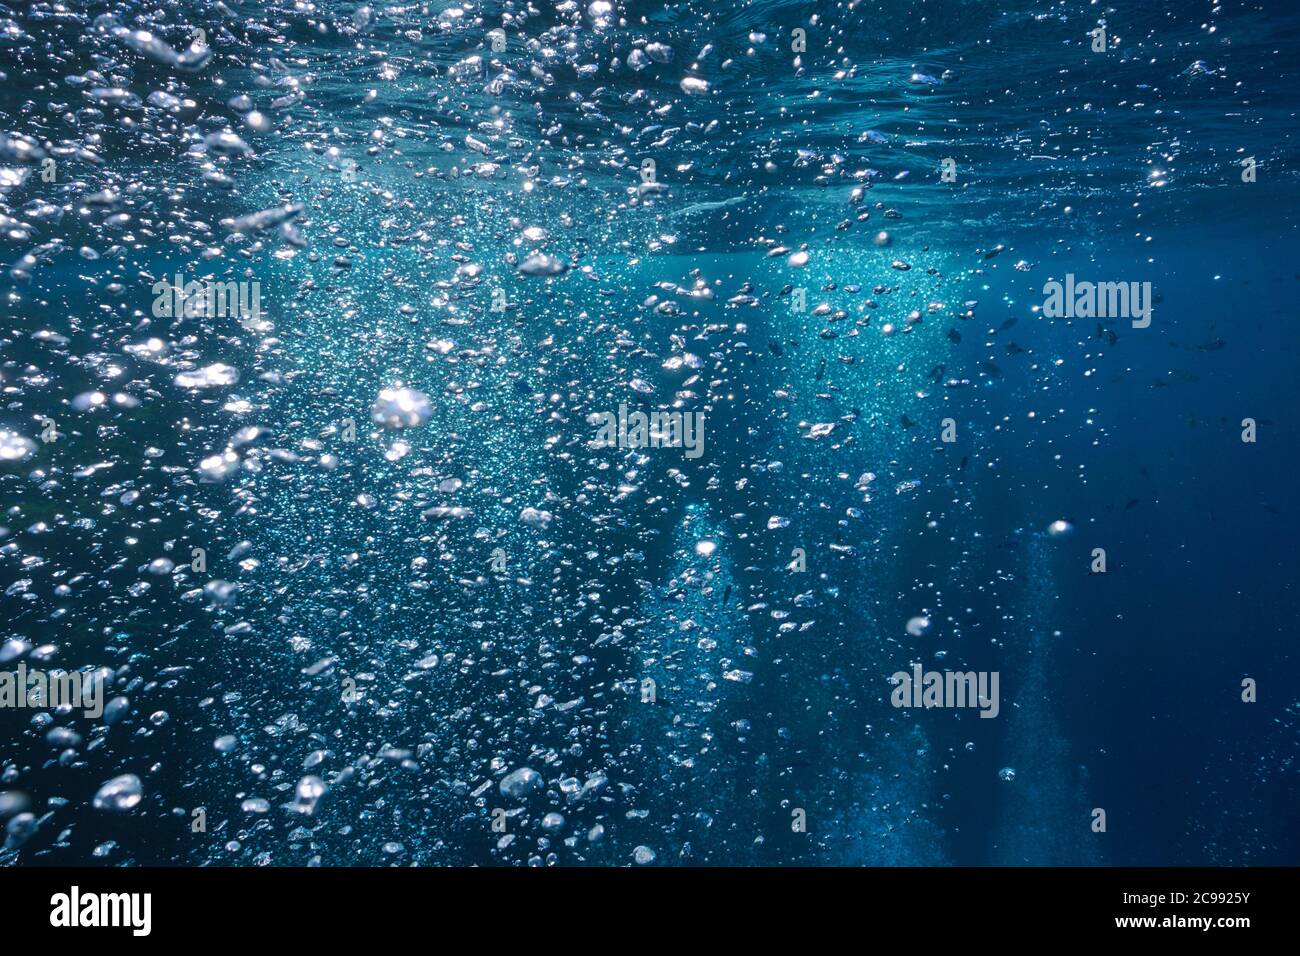 Bulles d'air sous l'eau s'élevant à la surface de l'eau, scène naturelle, mer Méditerranée Banque D'Images